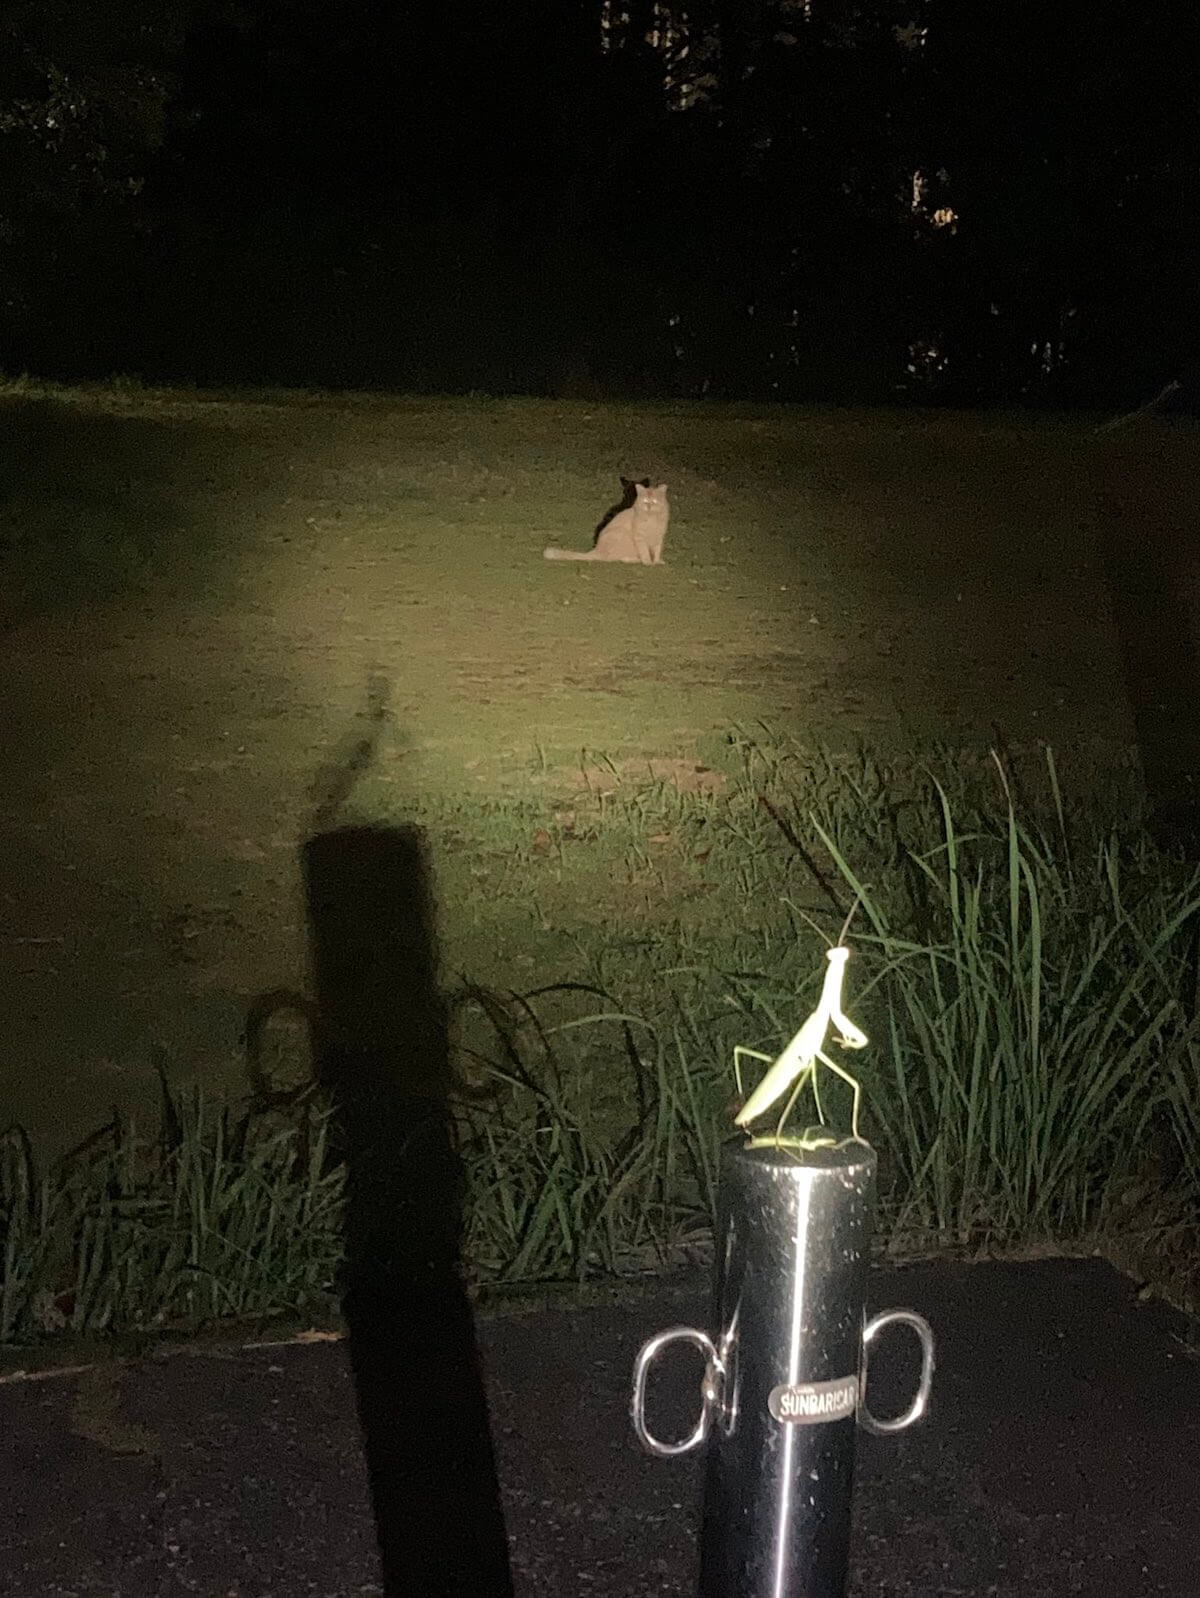 ポケモンバトルのように夜の公園で向かい合う猫とカマキリの写真